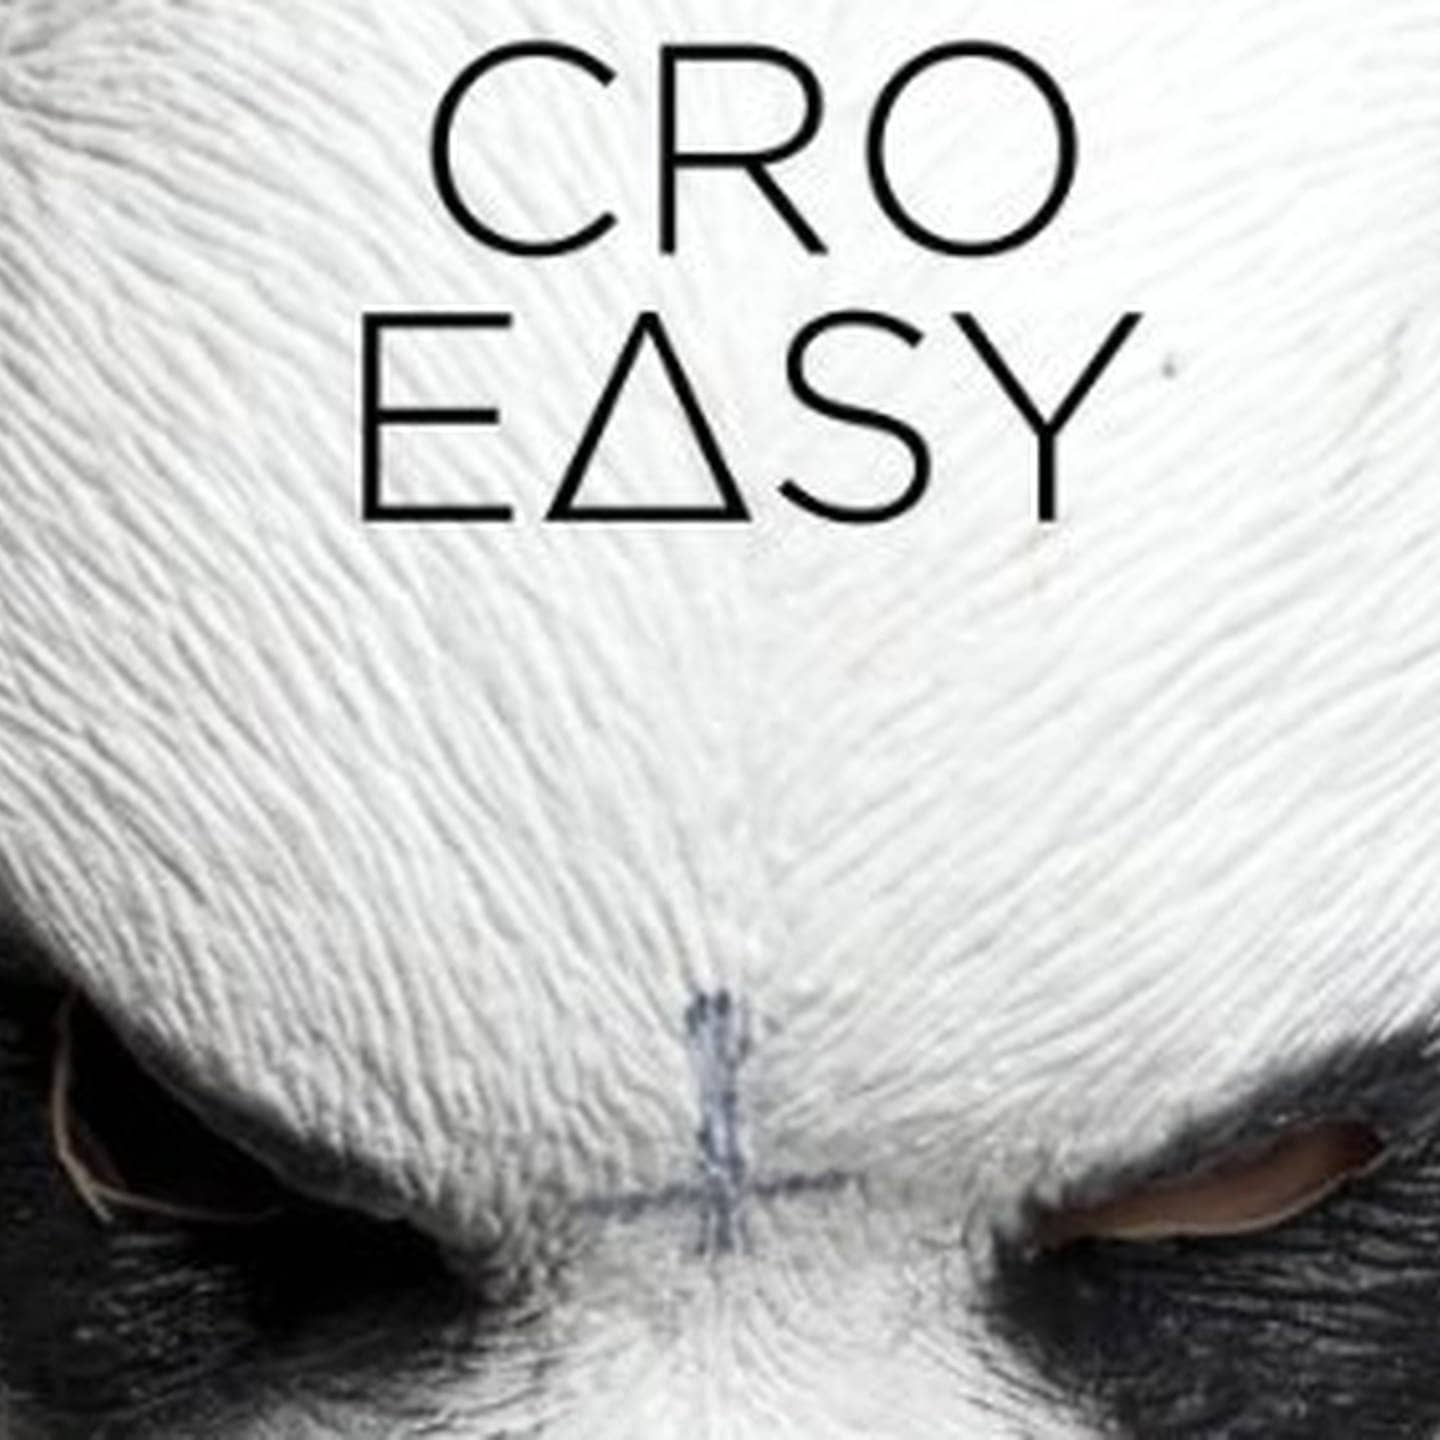 Easy – Cro